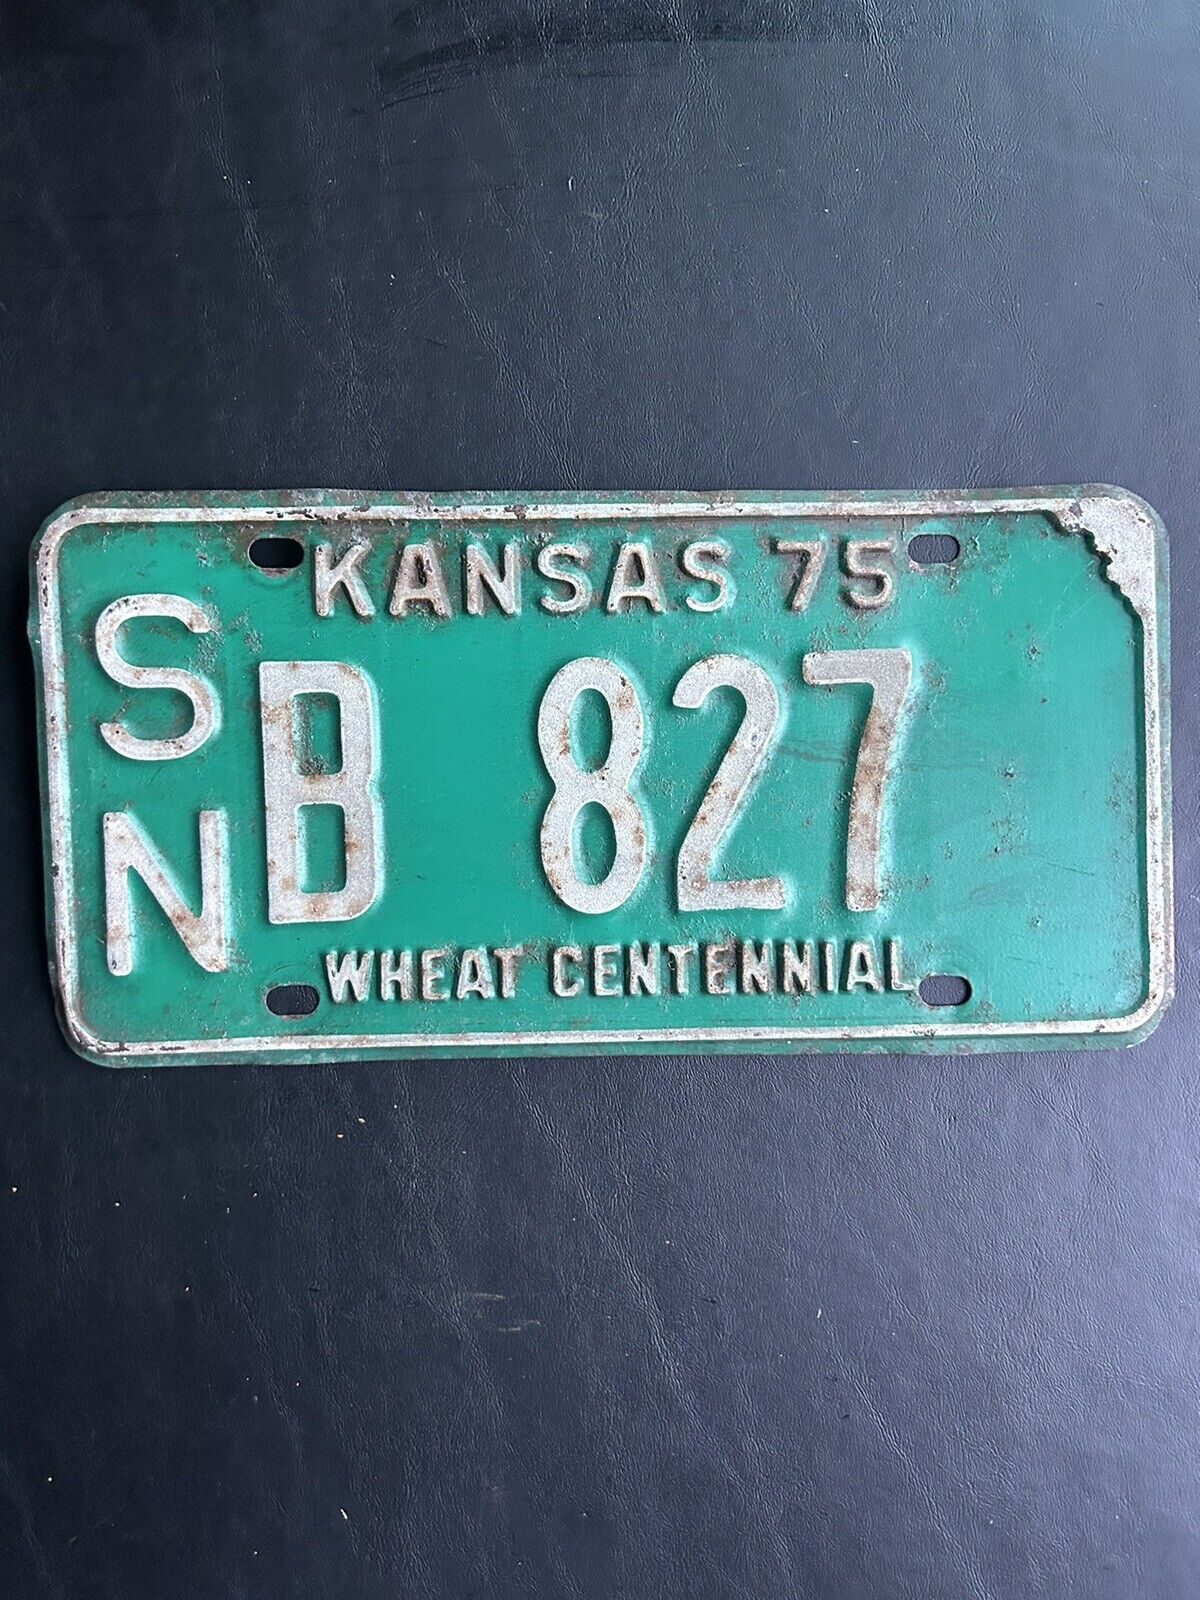 1975 Kansas License Plate s/n B 827 Shawnee County Wheat Centennial Slogan 